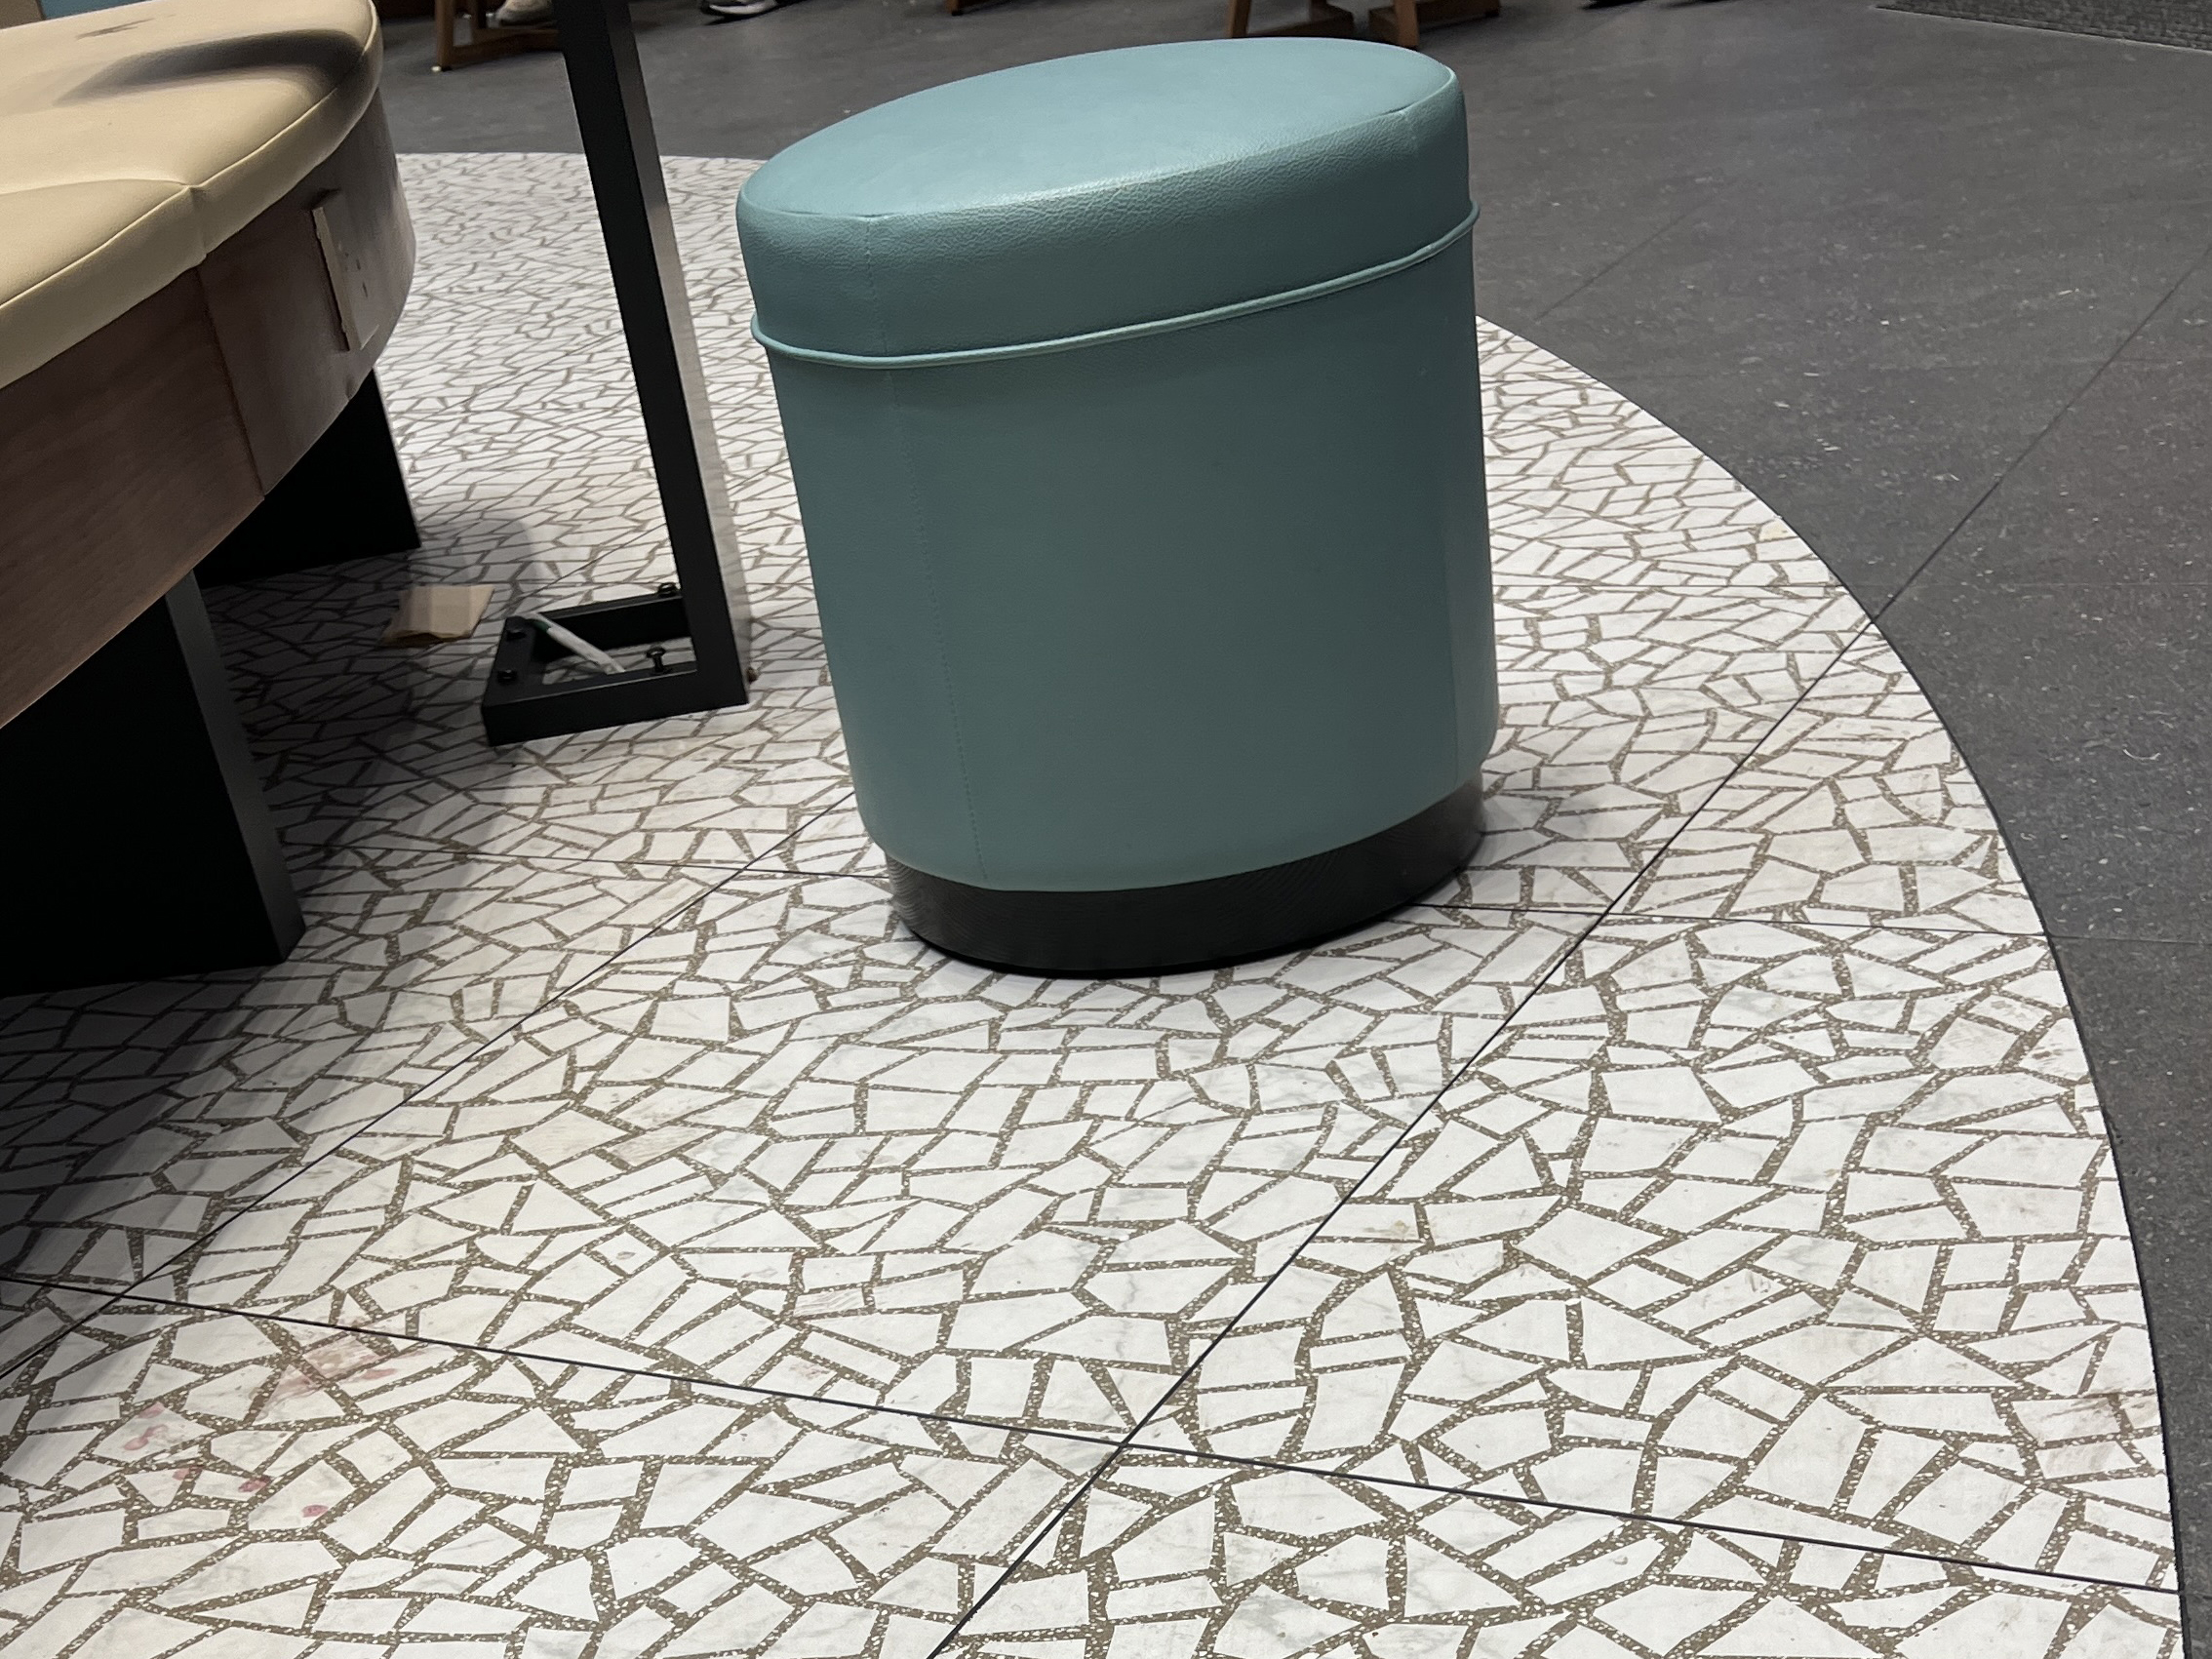 WIFi Ceramics New Project - Starbucks Coffee Shop (4)